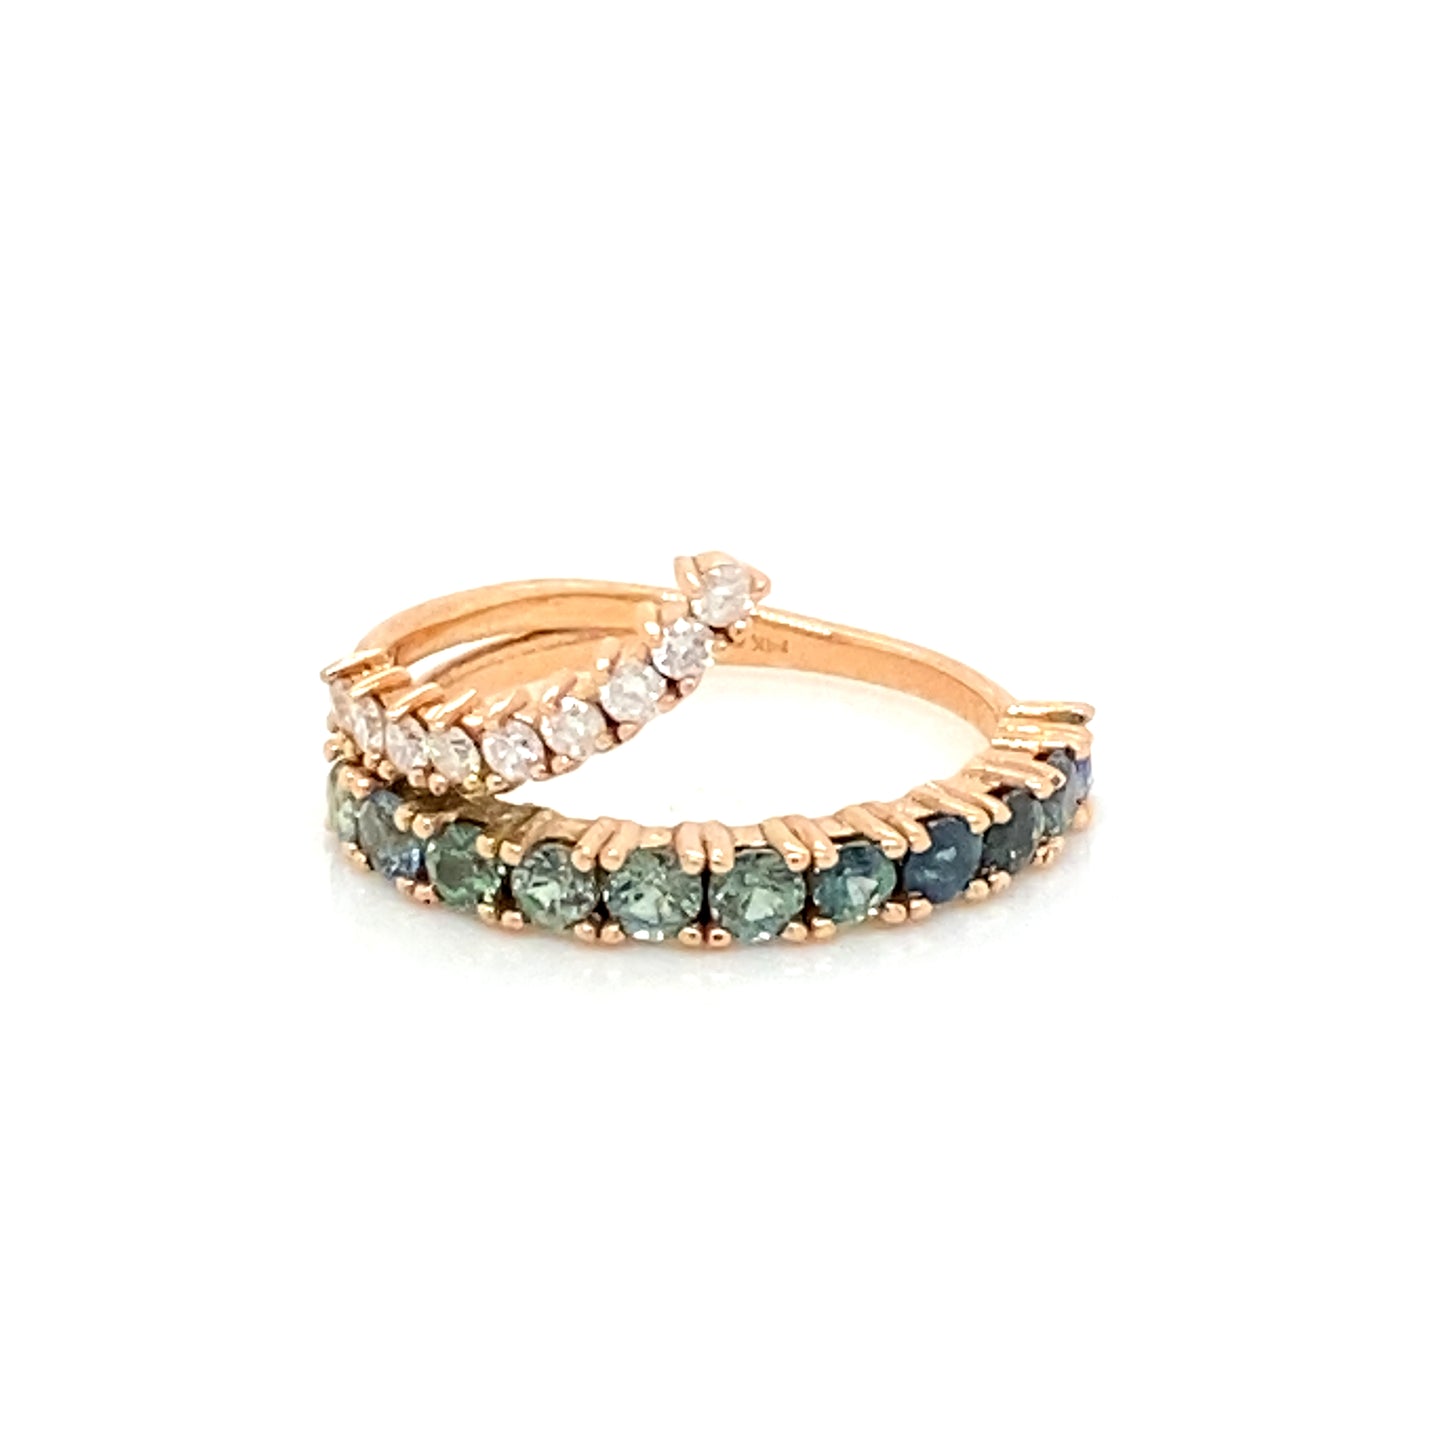 PIEZA ÚNICA / ENTREGA INMEDIATA / Churumbela de Zafiros azules verdosos con “copete” de diamantes / Oro rosa 14k / Talla 5